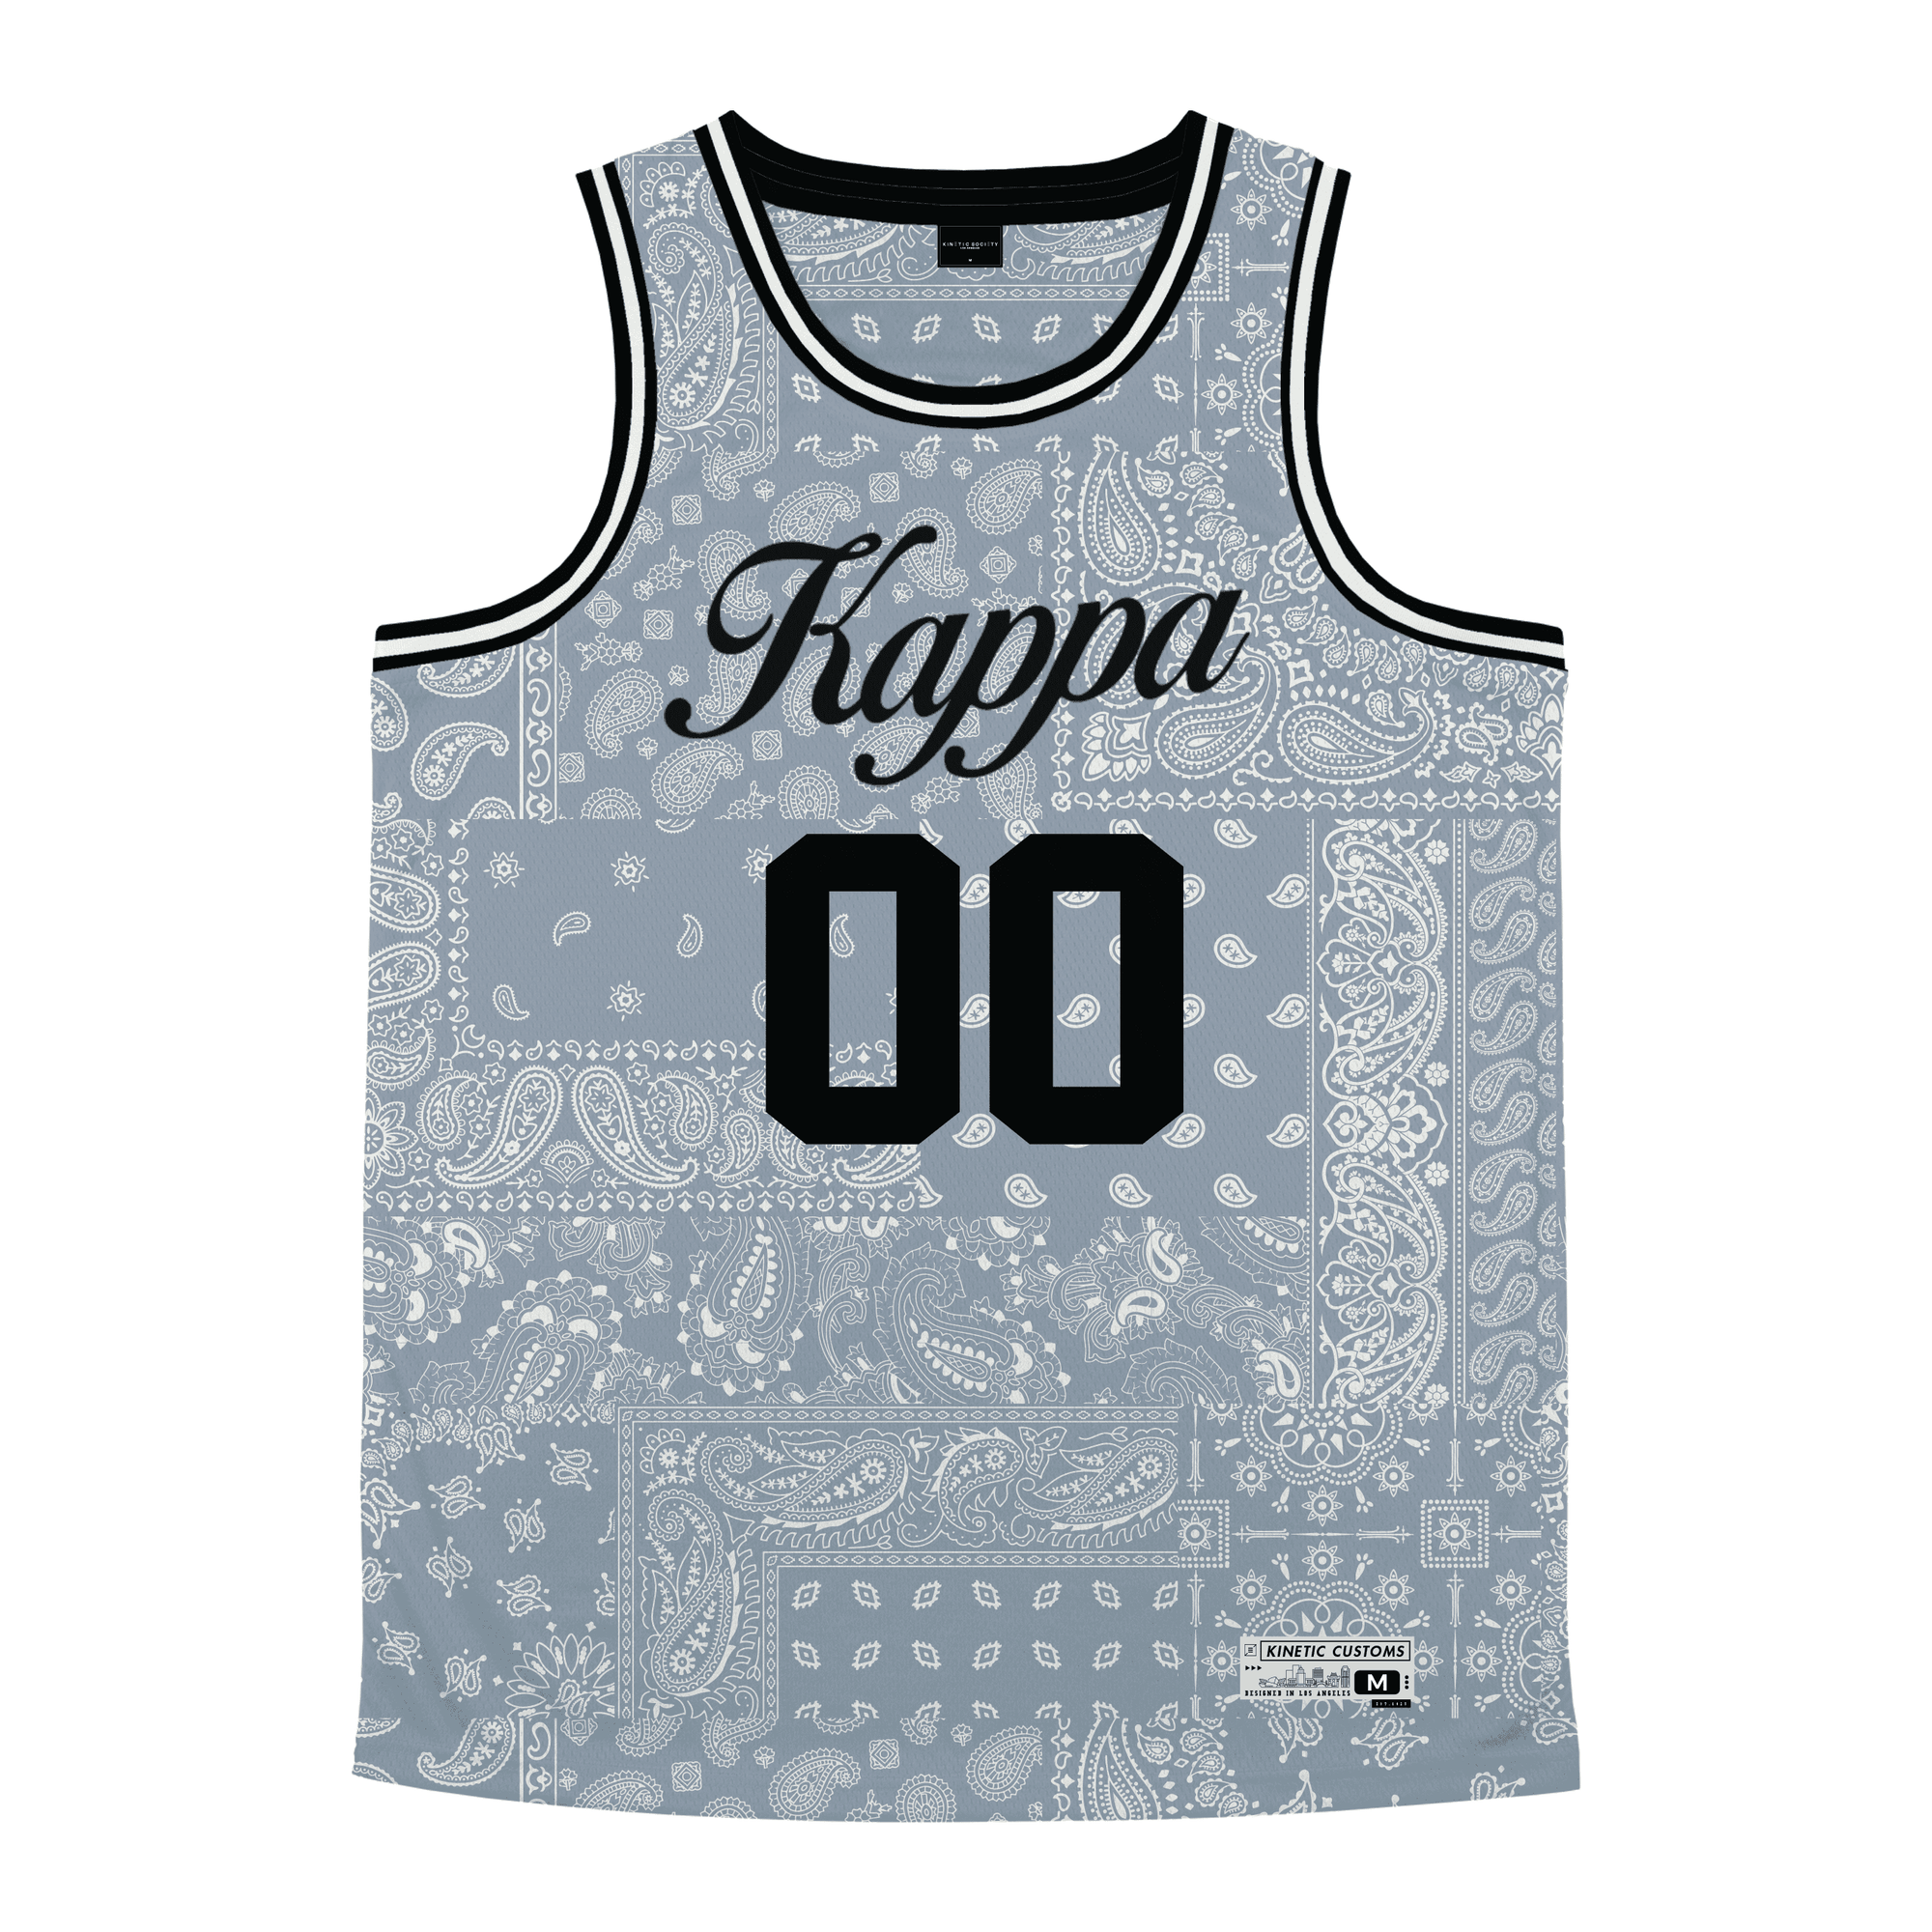 Kappa Kappa Gamma - Slate Bandana - Basketball Jersey